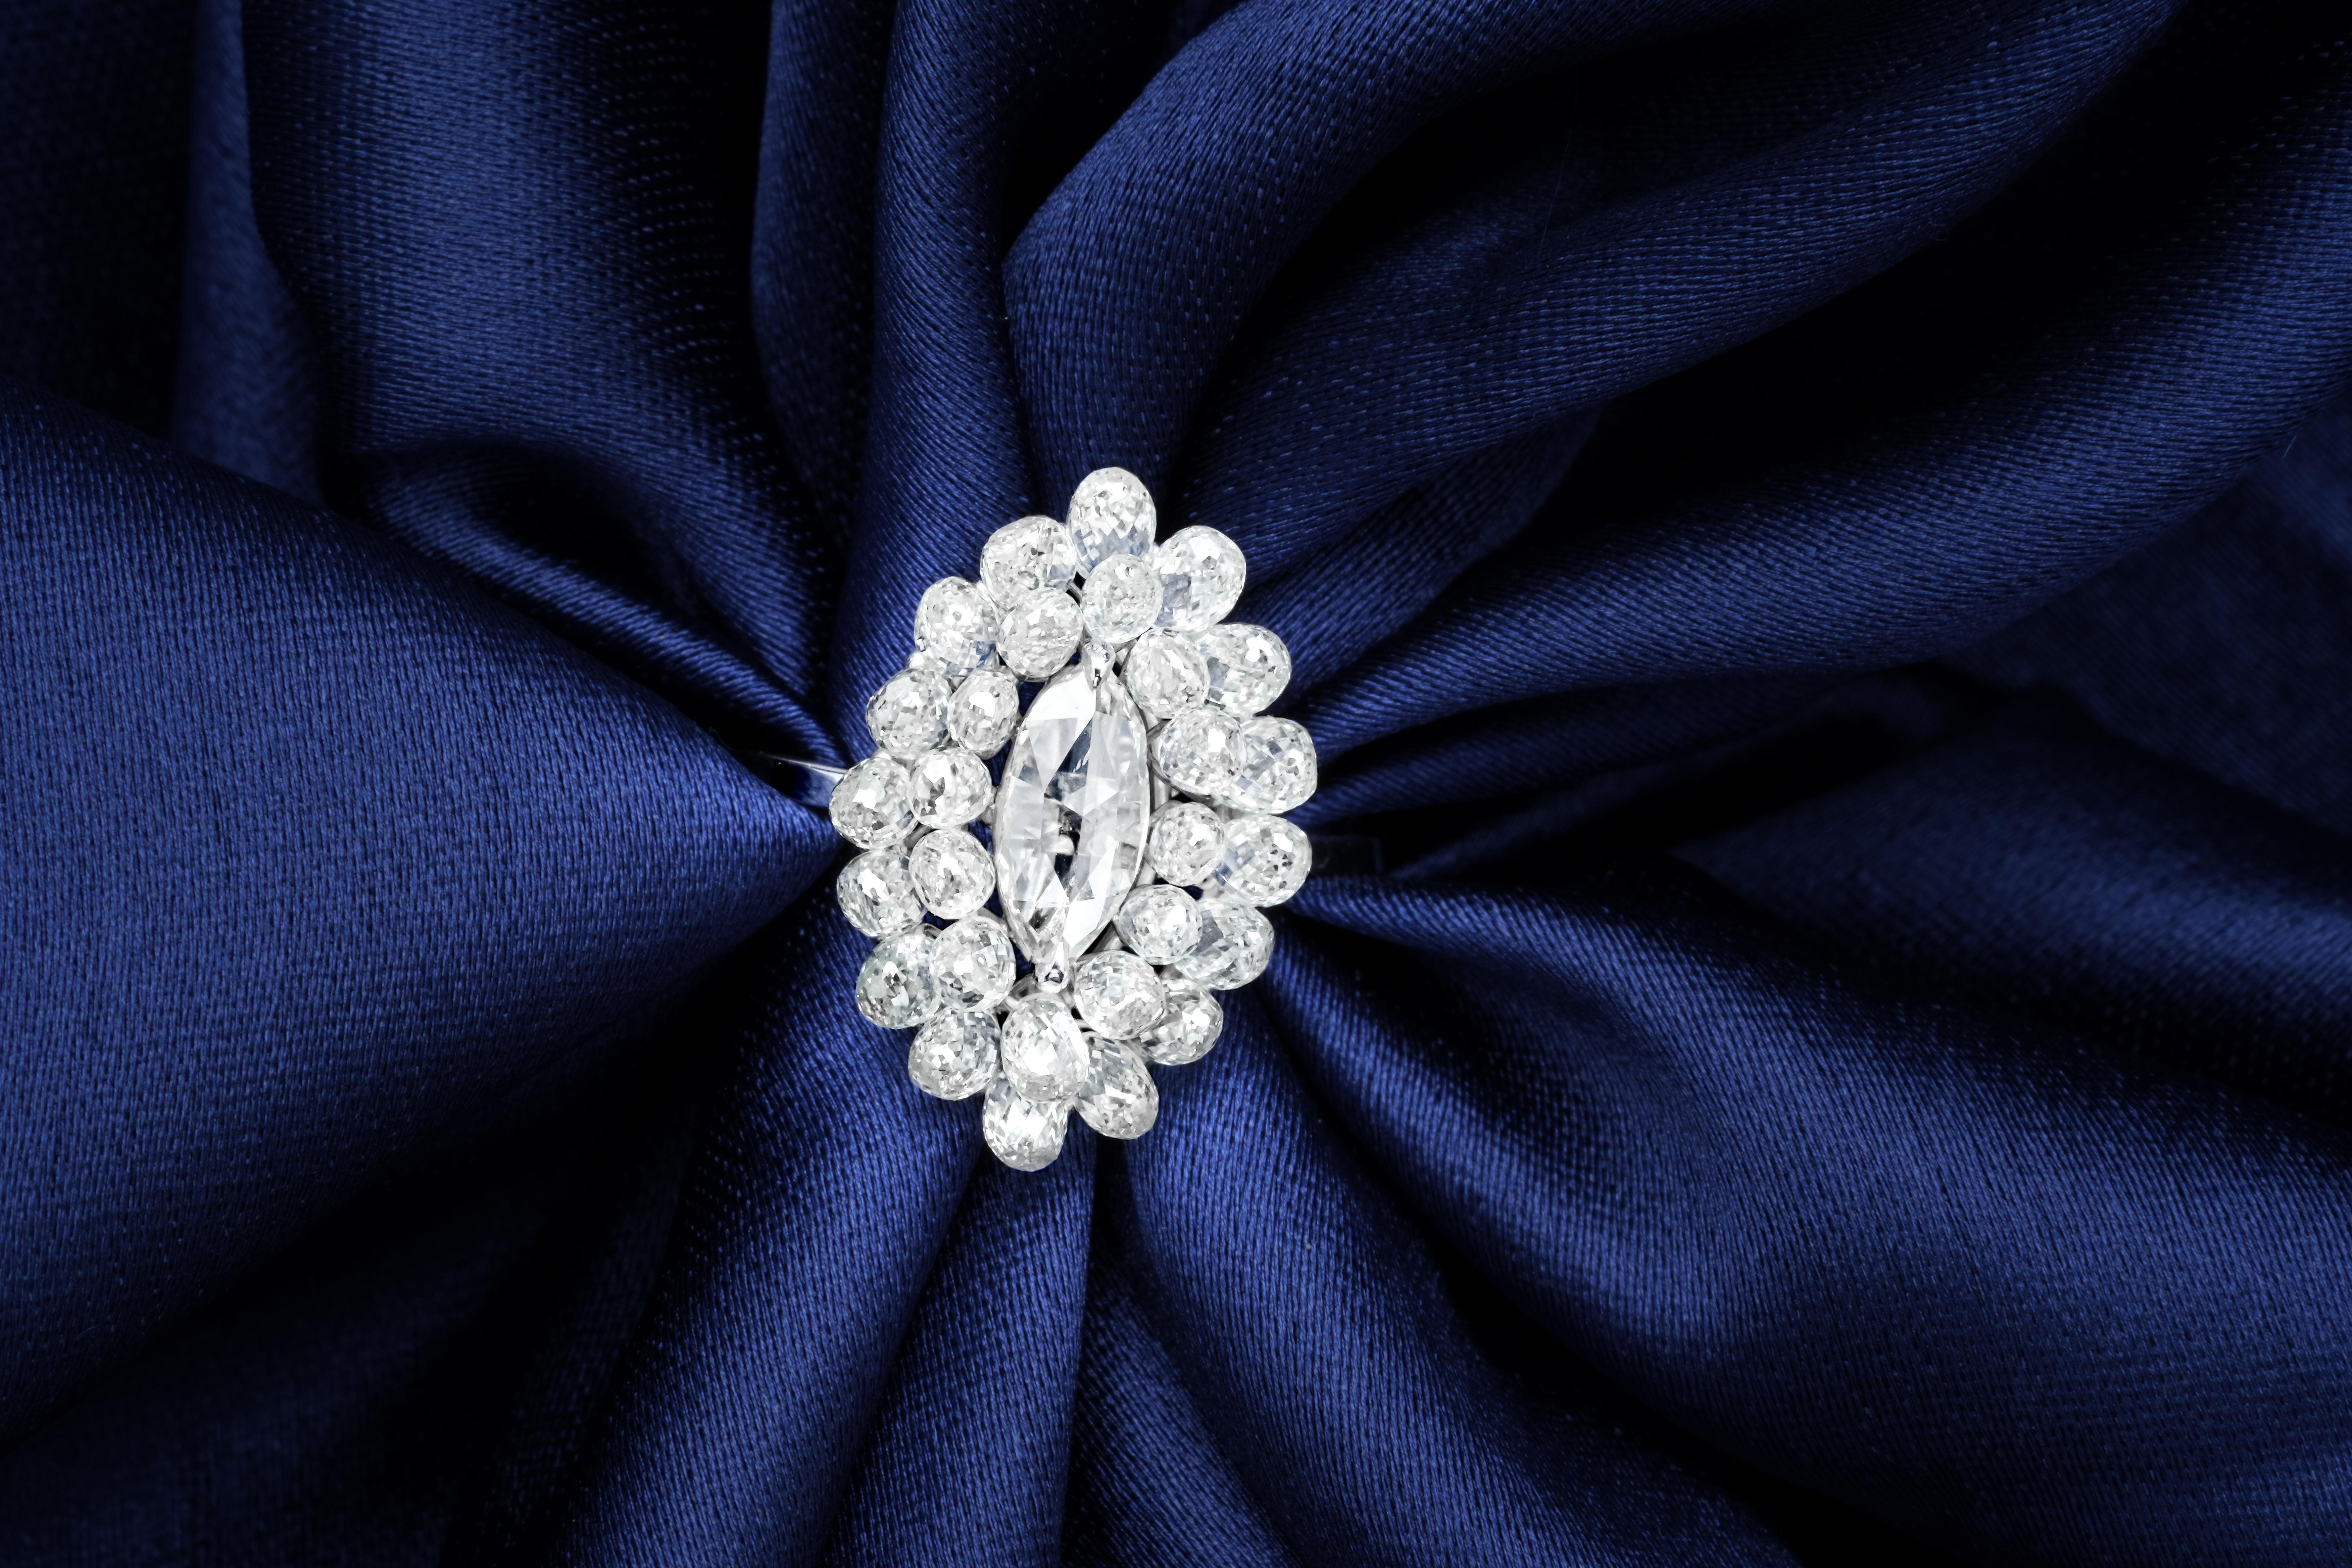 PANIM Diamant Marquise & Briolette 18k Weißgold Cluster Ring

Dieser Ring von PANIM ist ein einzigartiges und elegantes Schmuckstück mit diamantbesetzten Brioletten und einem marquiseförmigen Mittelstein aus Rosé. Diamantbrioletten sind für ihre